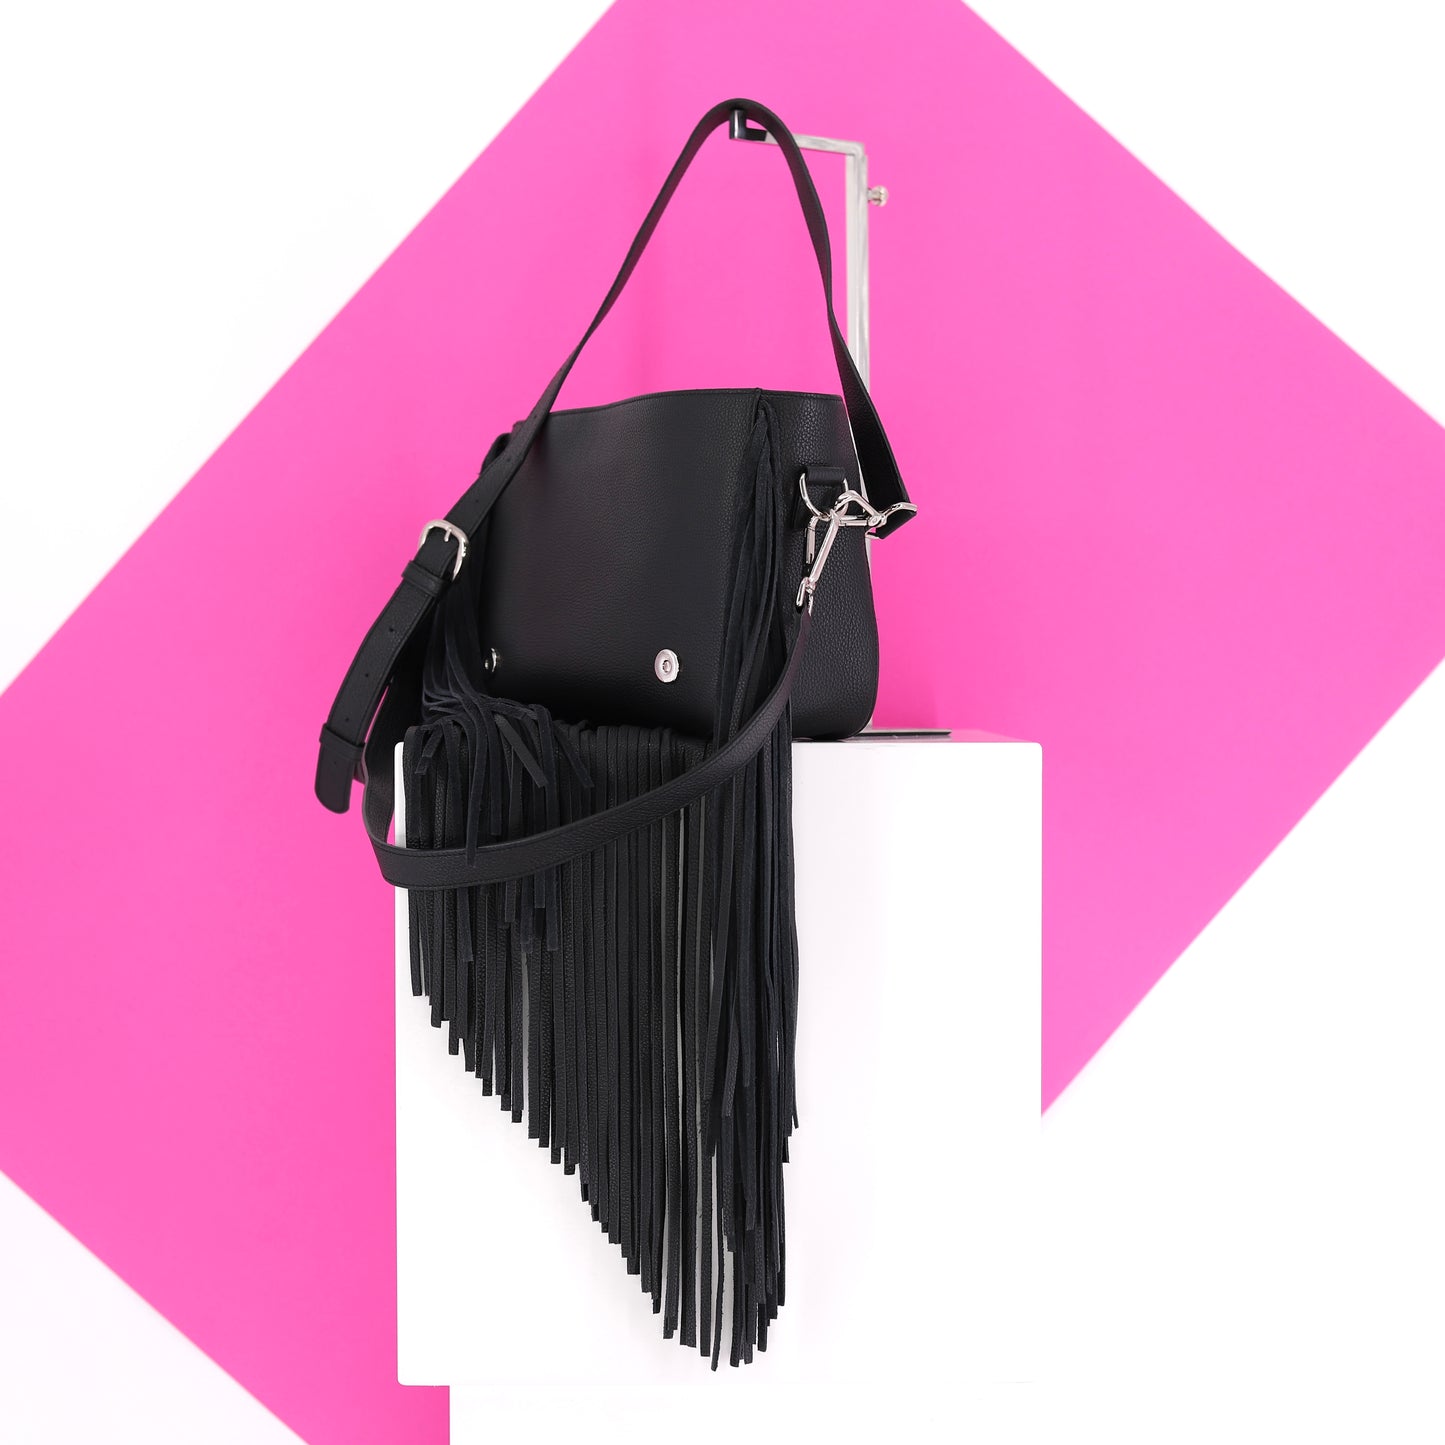 GABRIELLE Handtasche mit Fransen aus Leder in schwarz medium